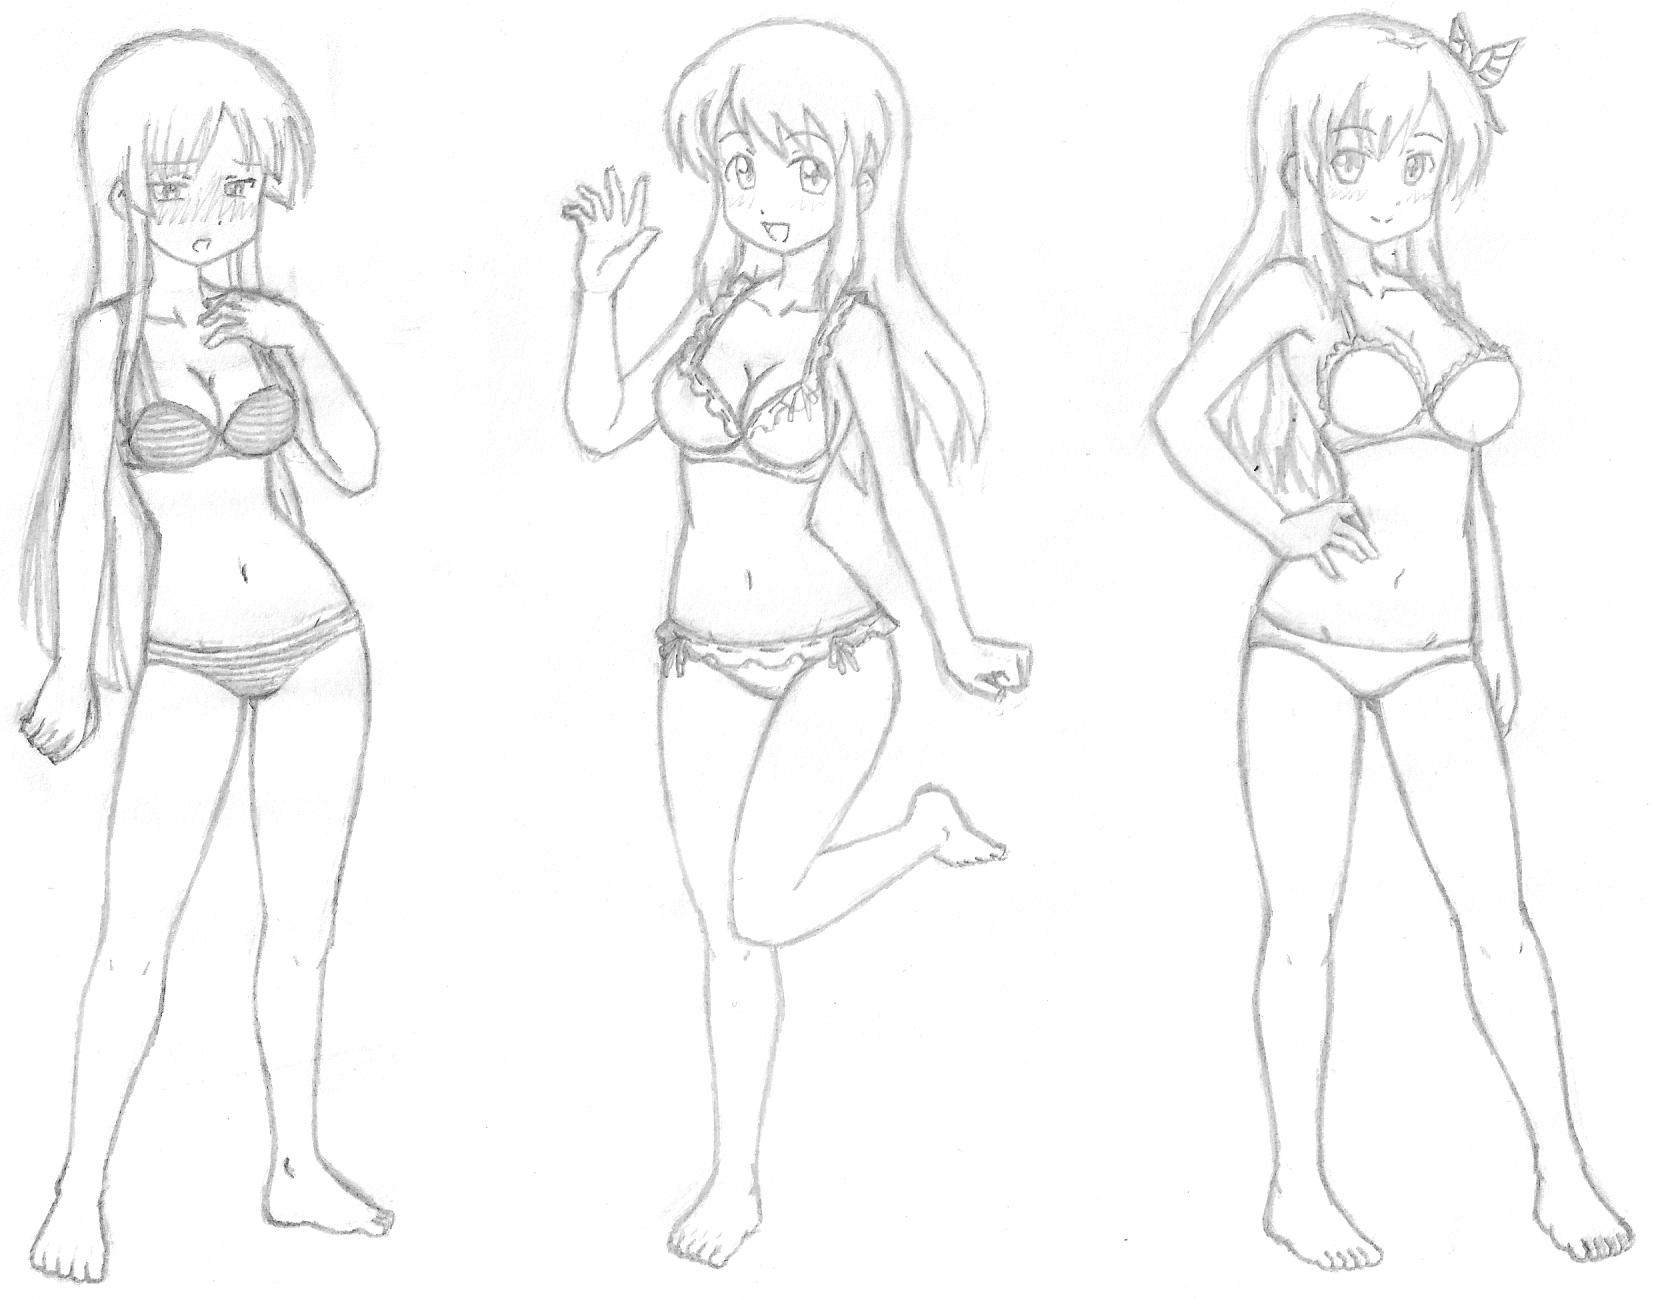 Anime girls in underwear by bryanz09 on DeviantArt